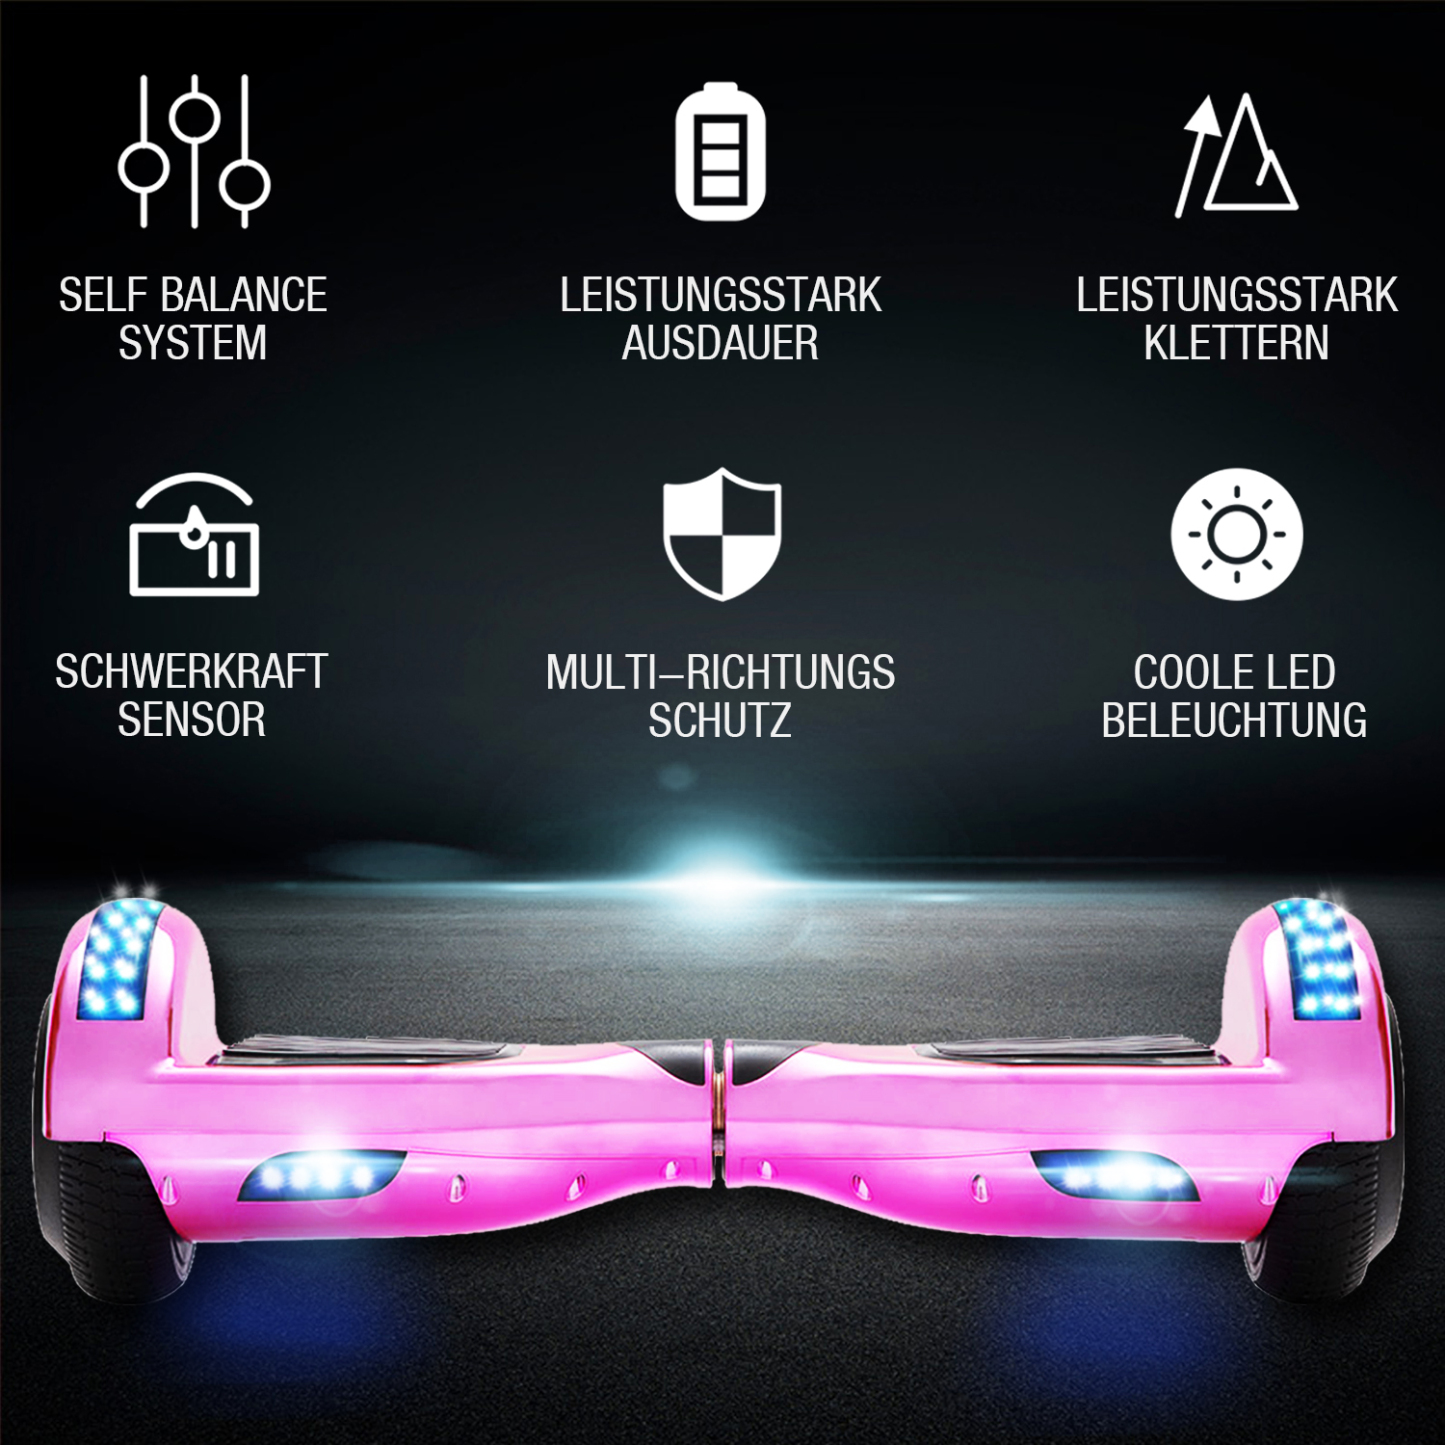 Neues 6,5" pink Hoverboard für Kinder, mit Bluetooth Musik Lautsprecher und Disco LED Licht - 500W 12km/h-Hoverboarde